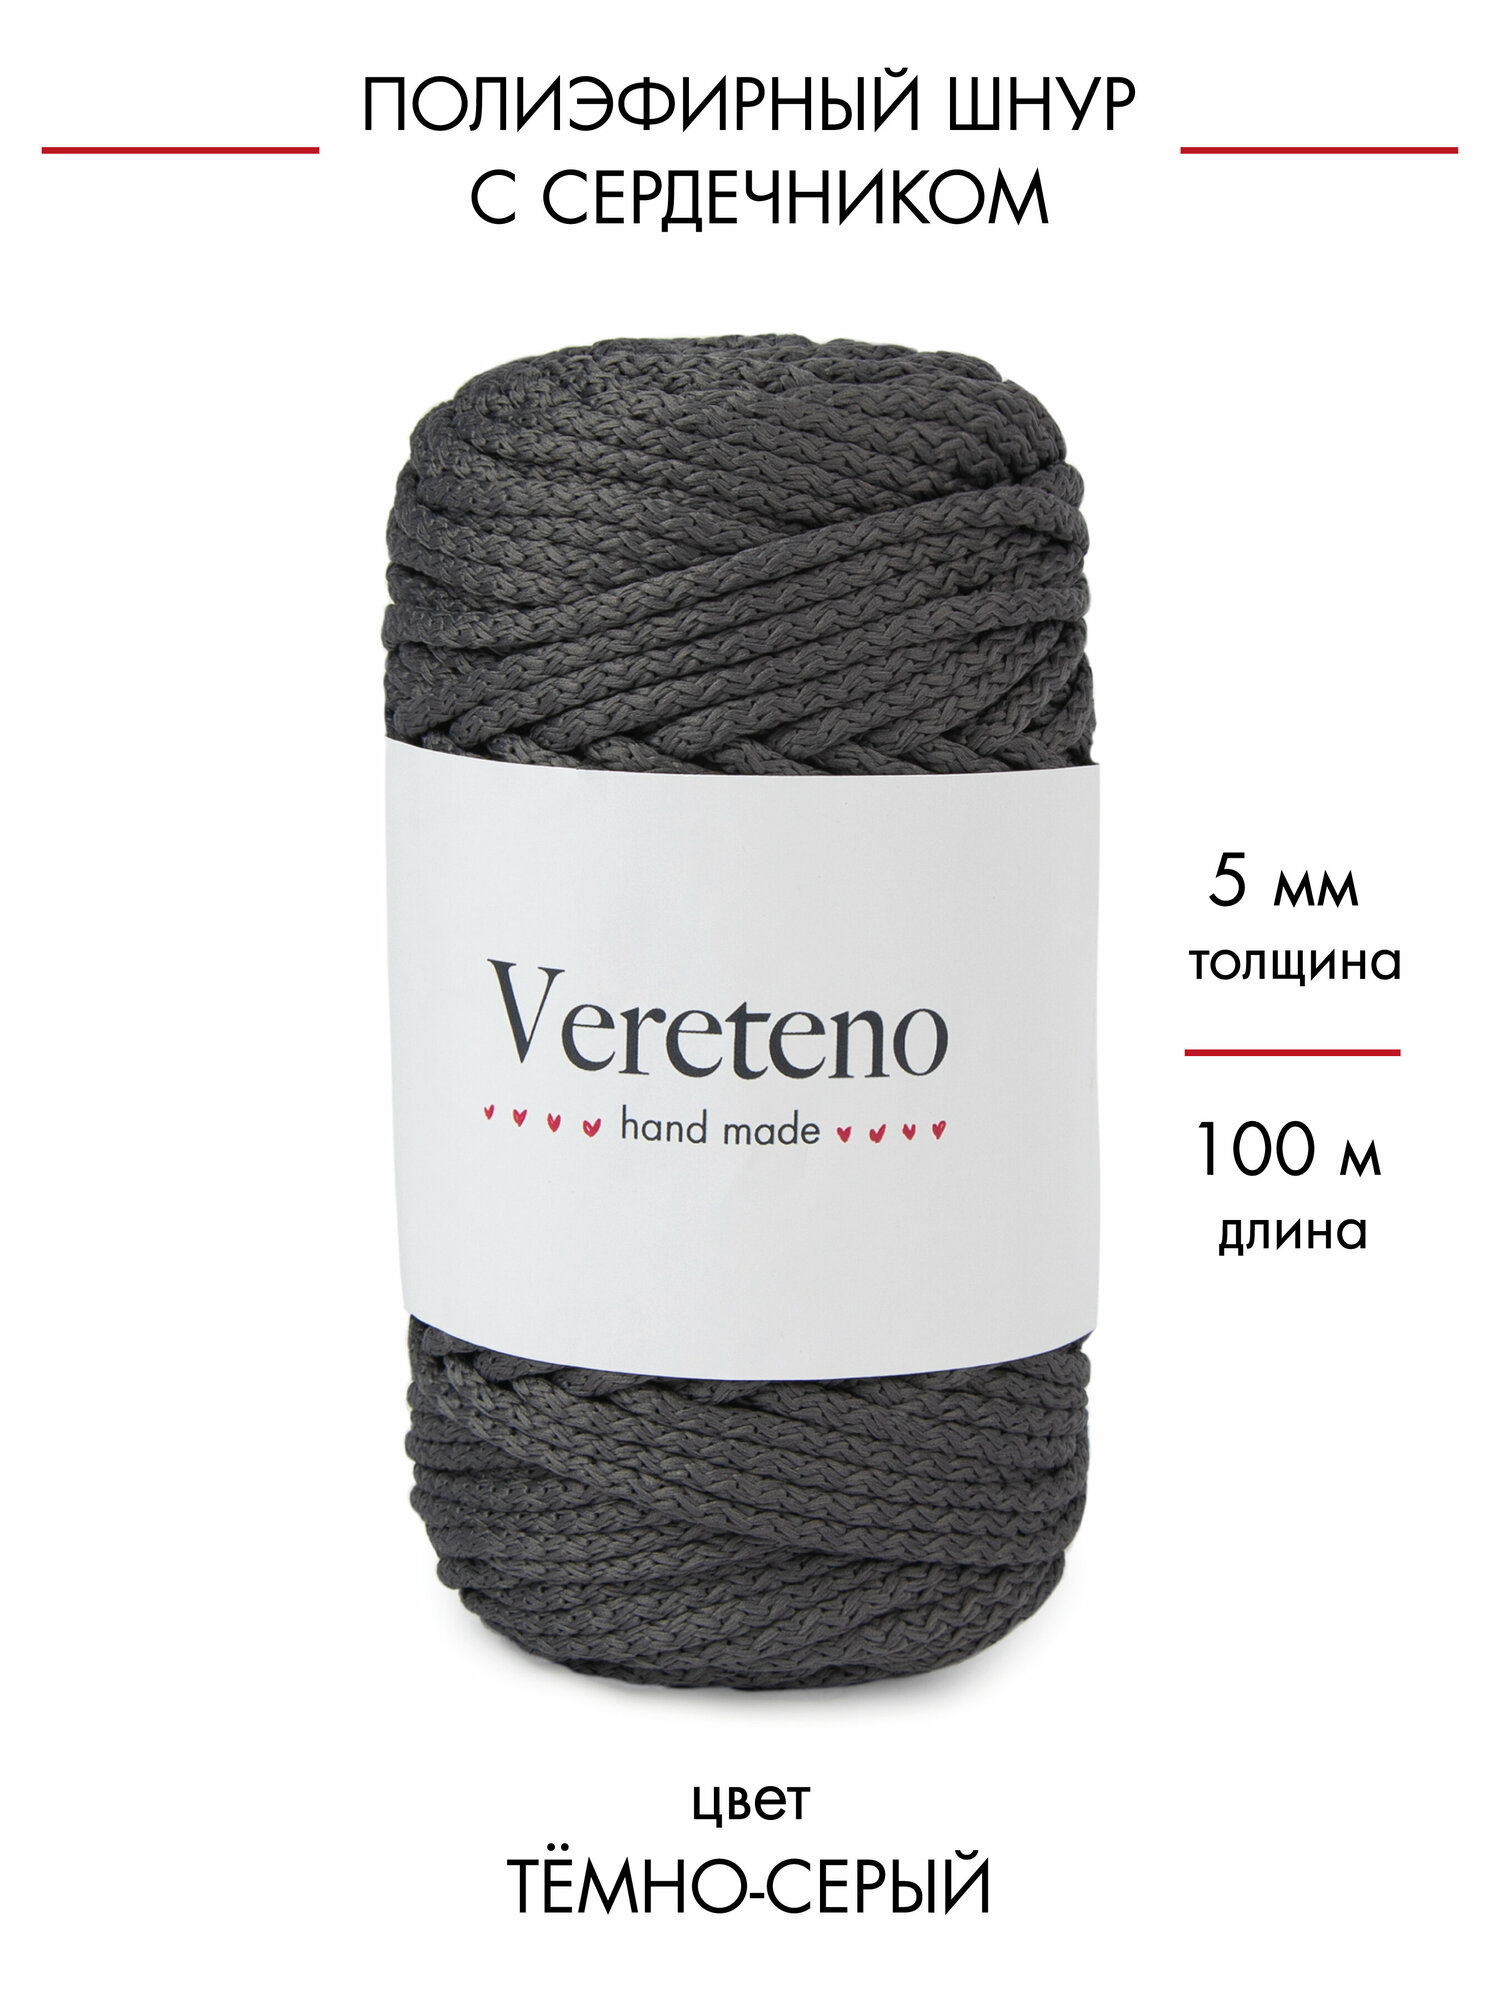 Полиэфирный шнур Vereteno с сердечником, диаметр 5мм, длина 100м, цвет темно-серый